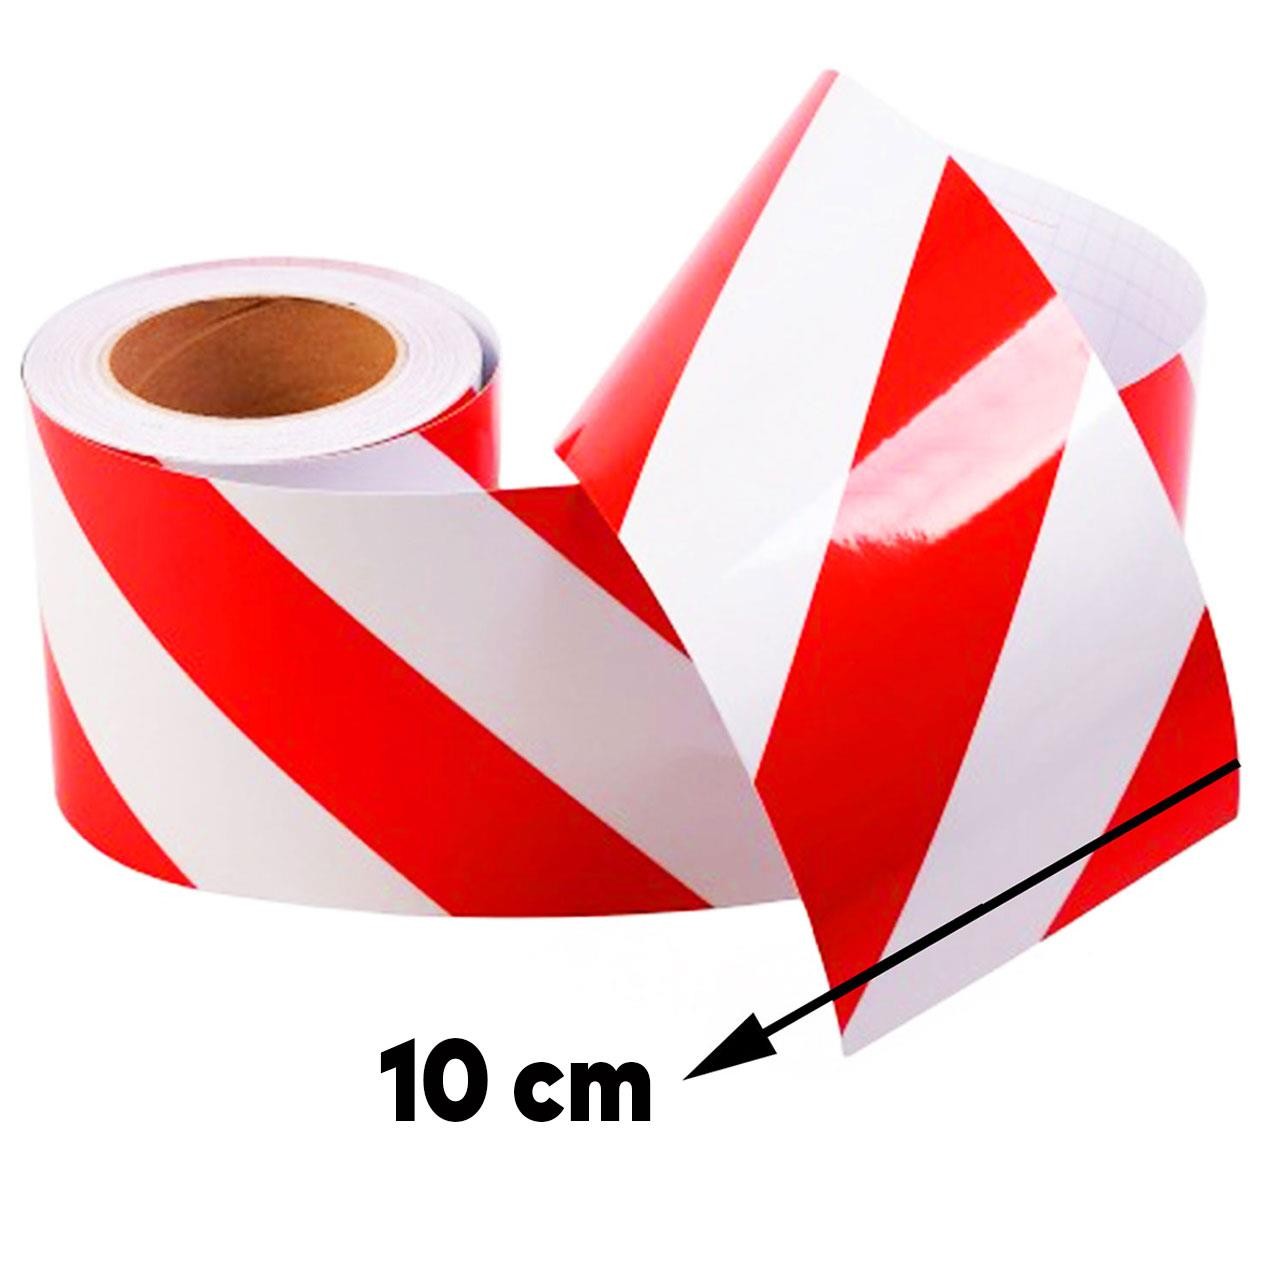 Reflektörlü Reflektif Fosforlu Şerit Bant 10 cm 1 Metre İkaz Bandı Kırmızı Beyaz